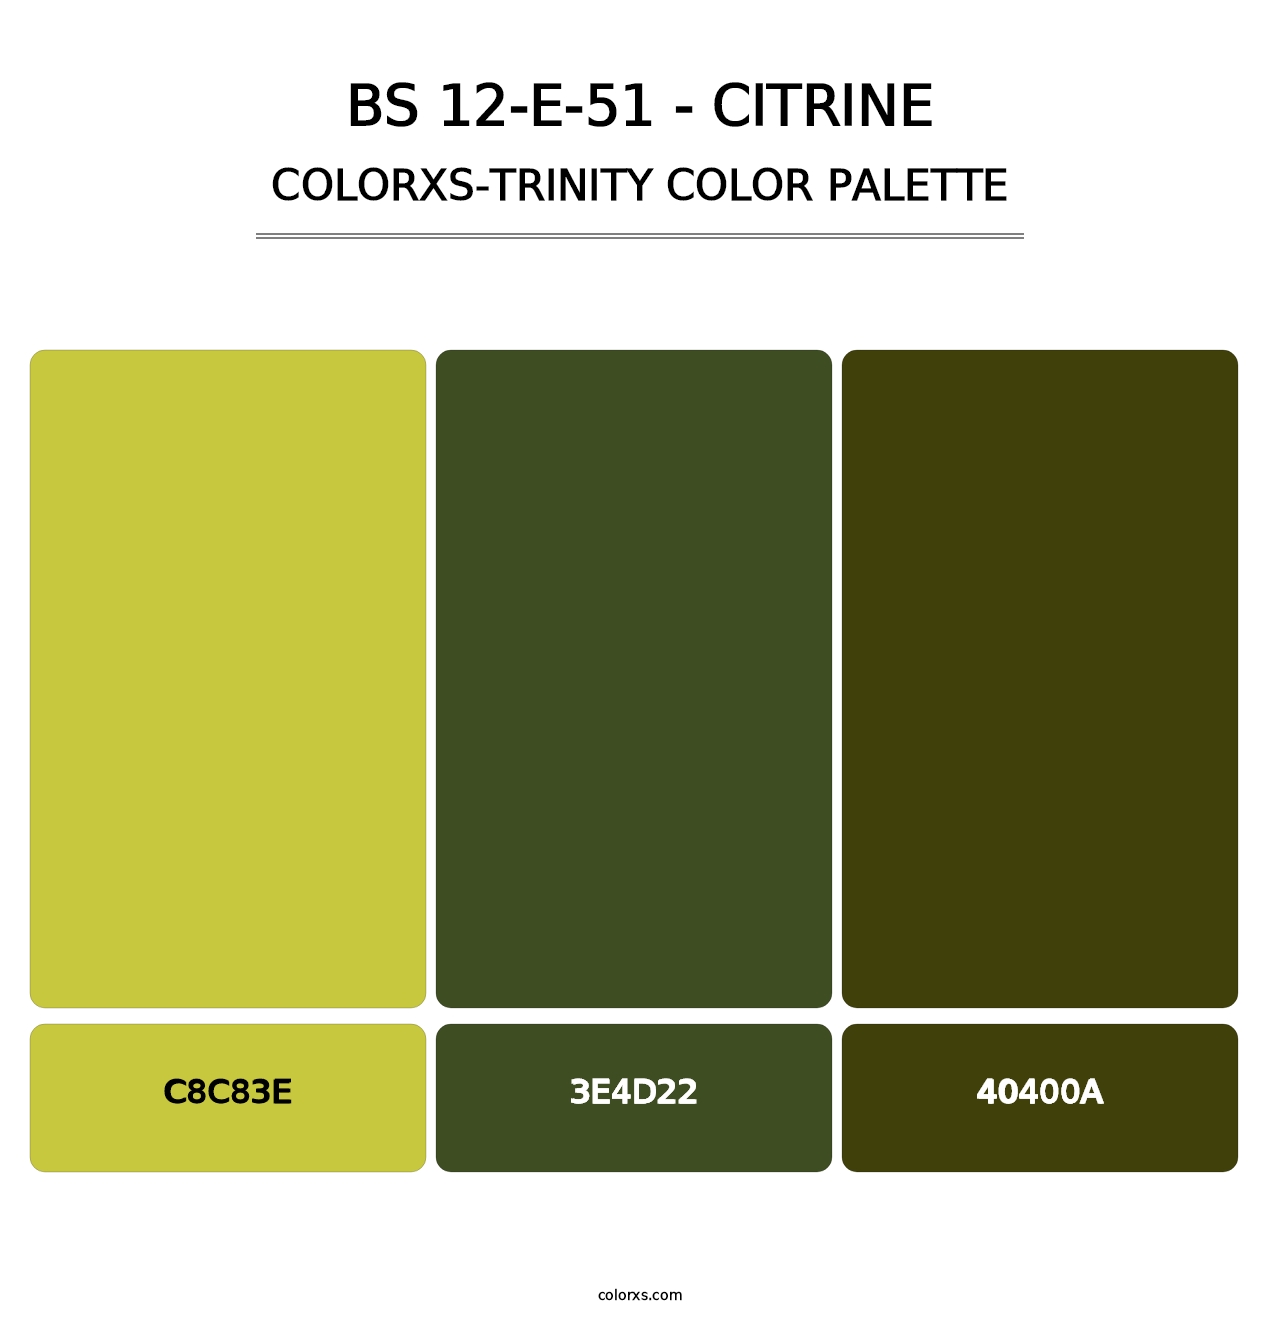 BS 12-E-51 - Citrine - Colorxs Trinity Palette